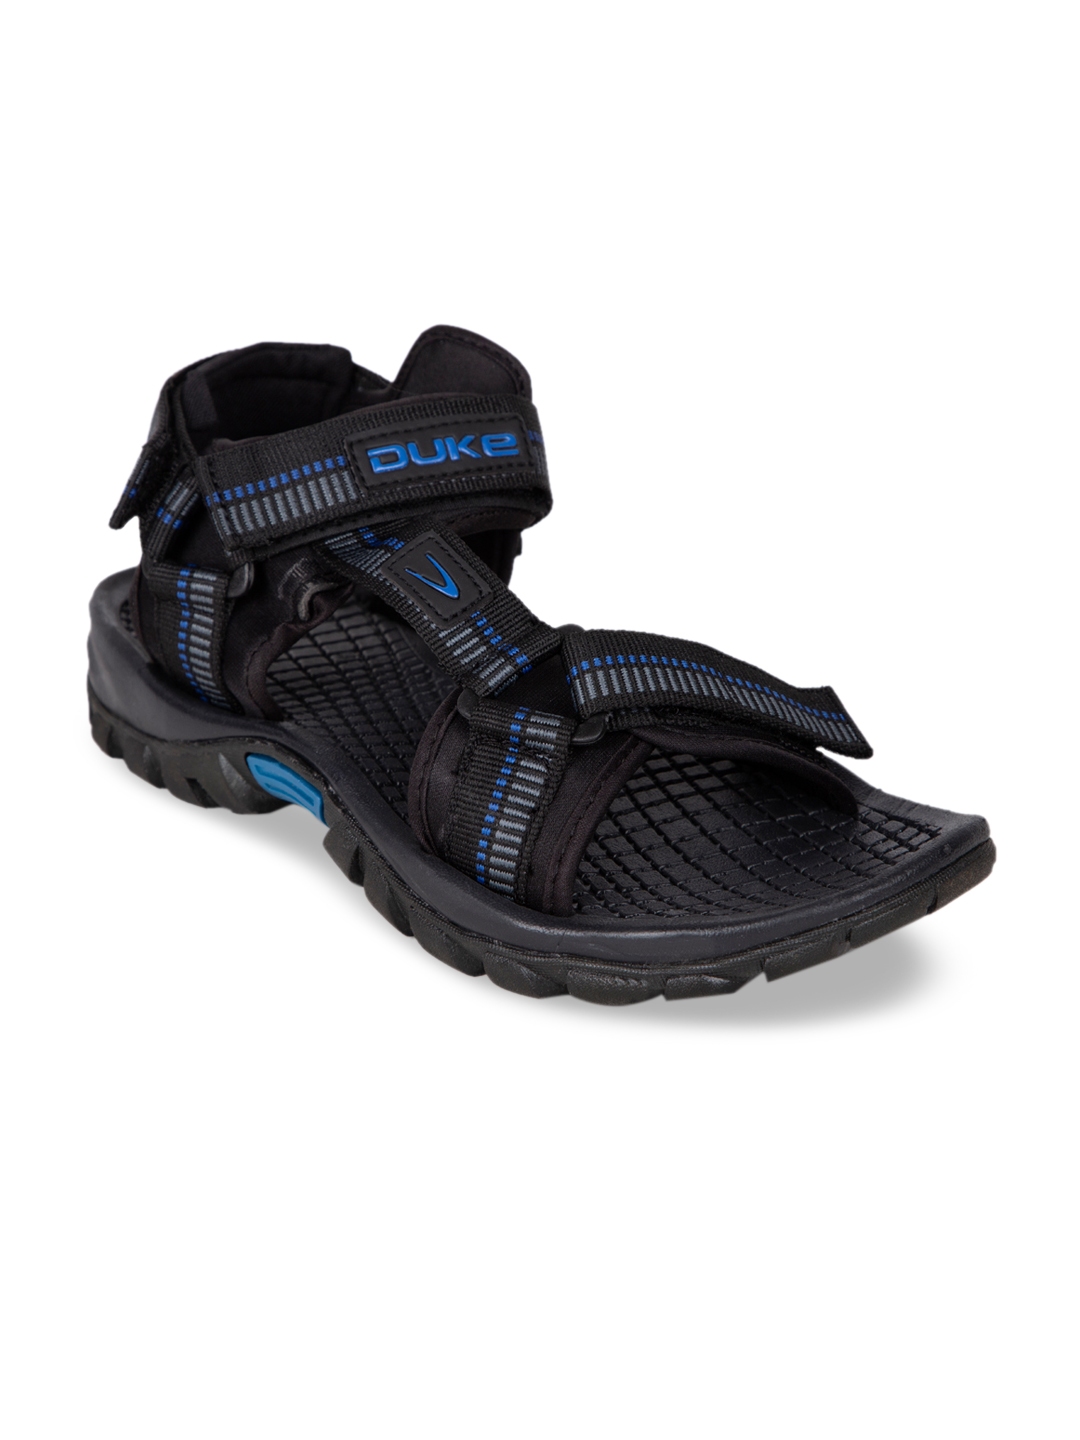 Buy Duke Men Black Sports Sandals - Sports Sandals for Men 10173871 ...